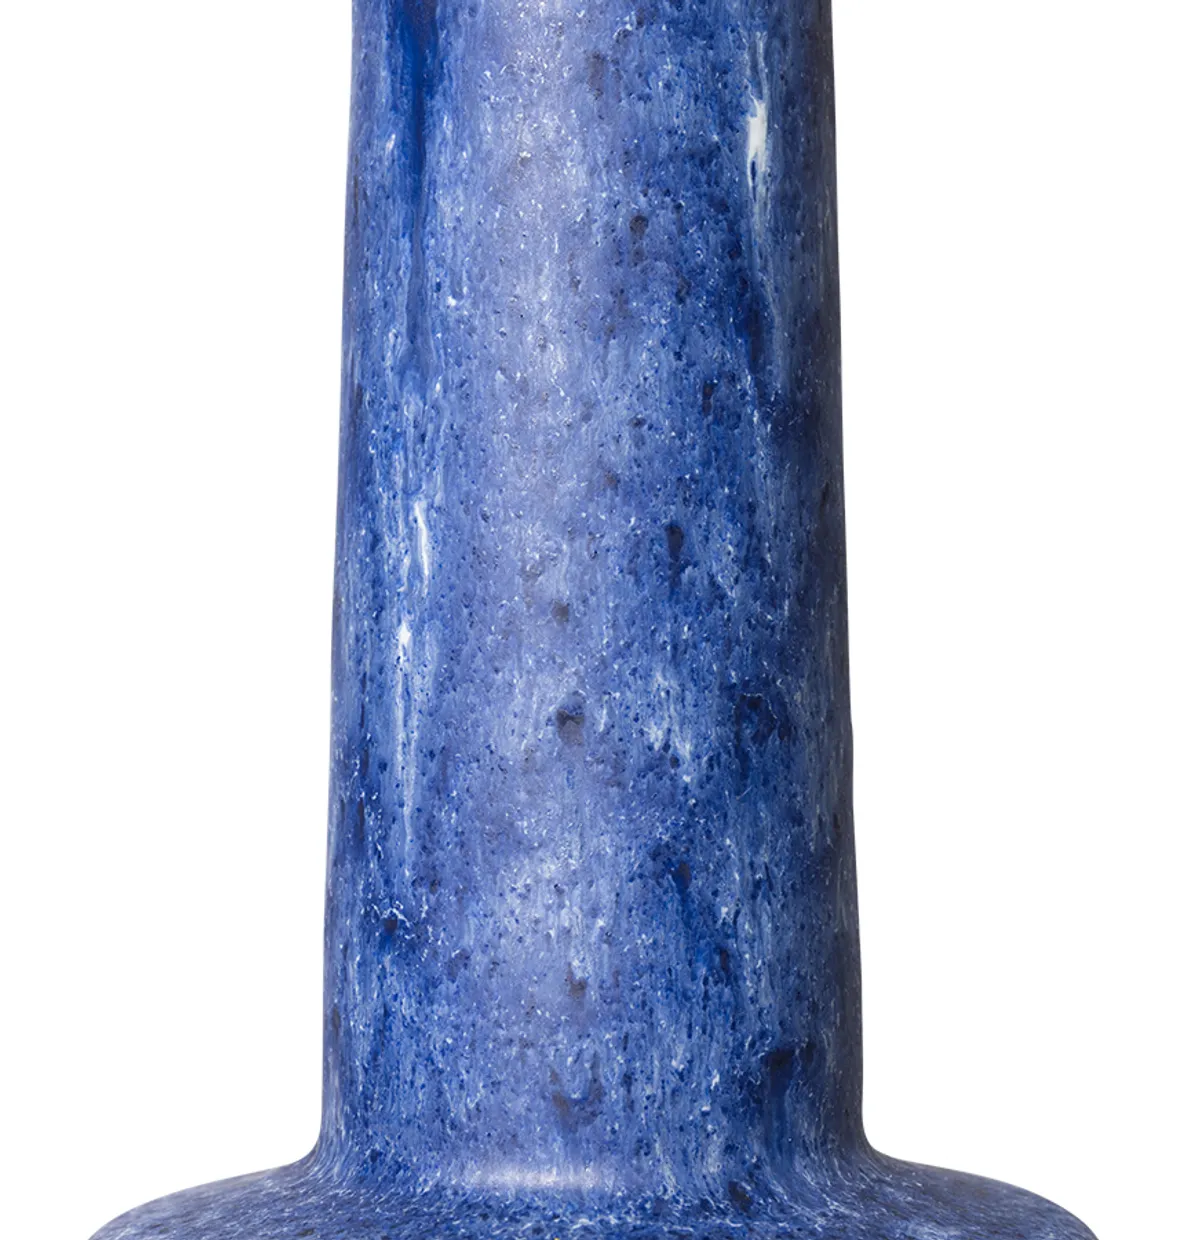 Retro stoneware lamp base, blue